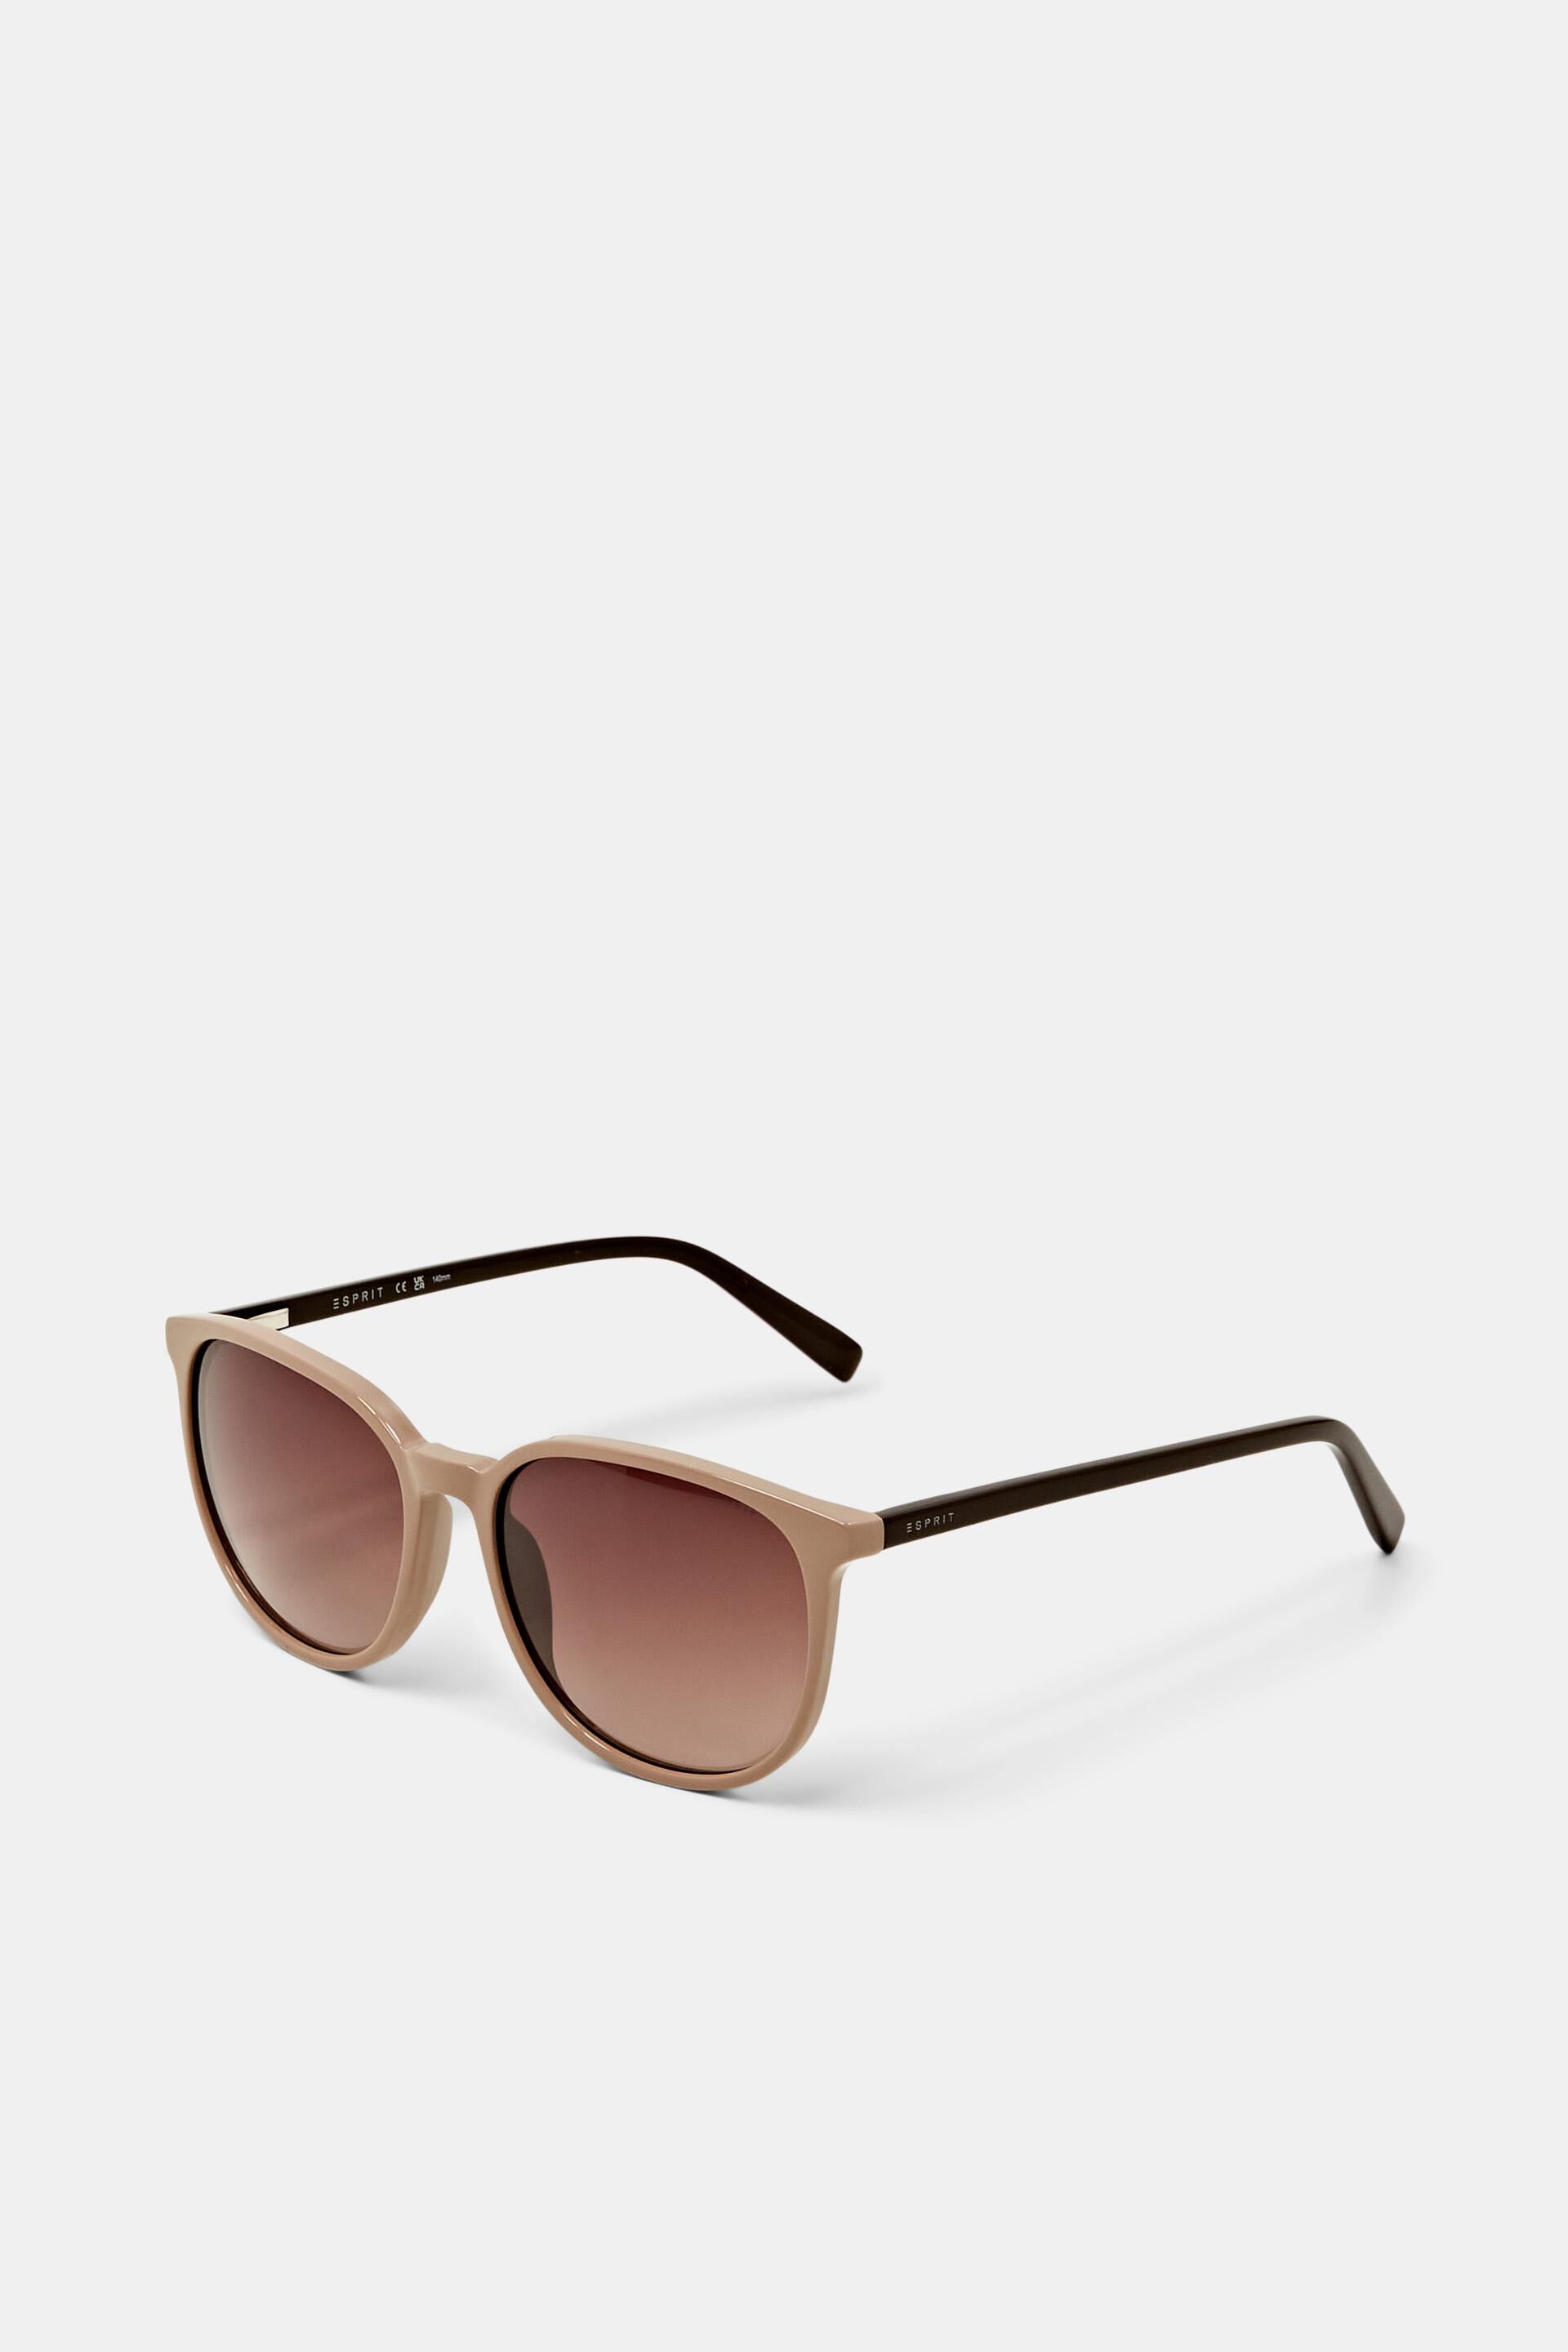 Esprit Online Store Sonnenbrille mit farbigem Rahmen